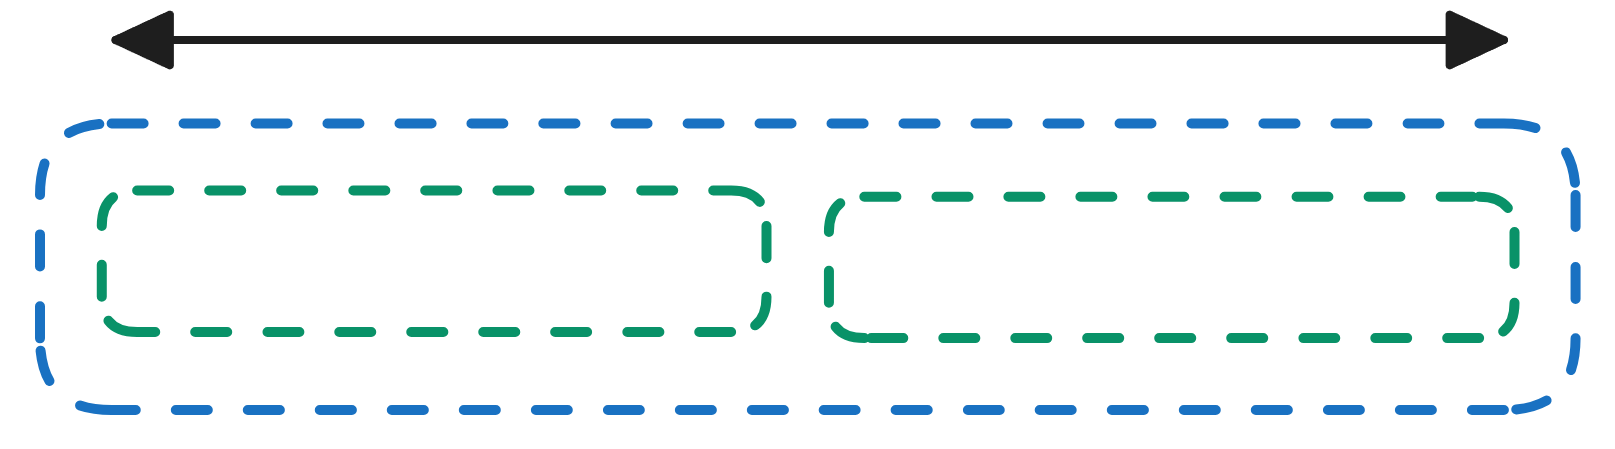 Image showing horizontal layout